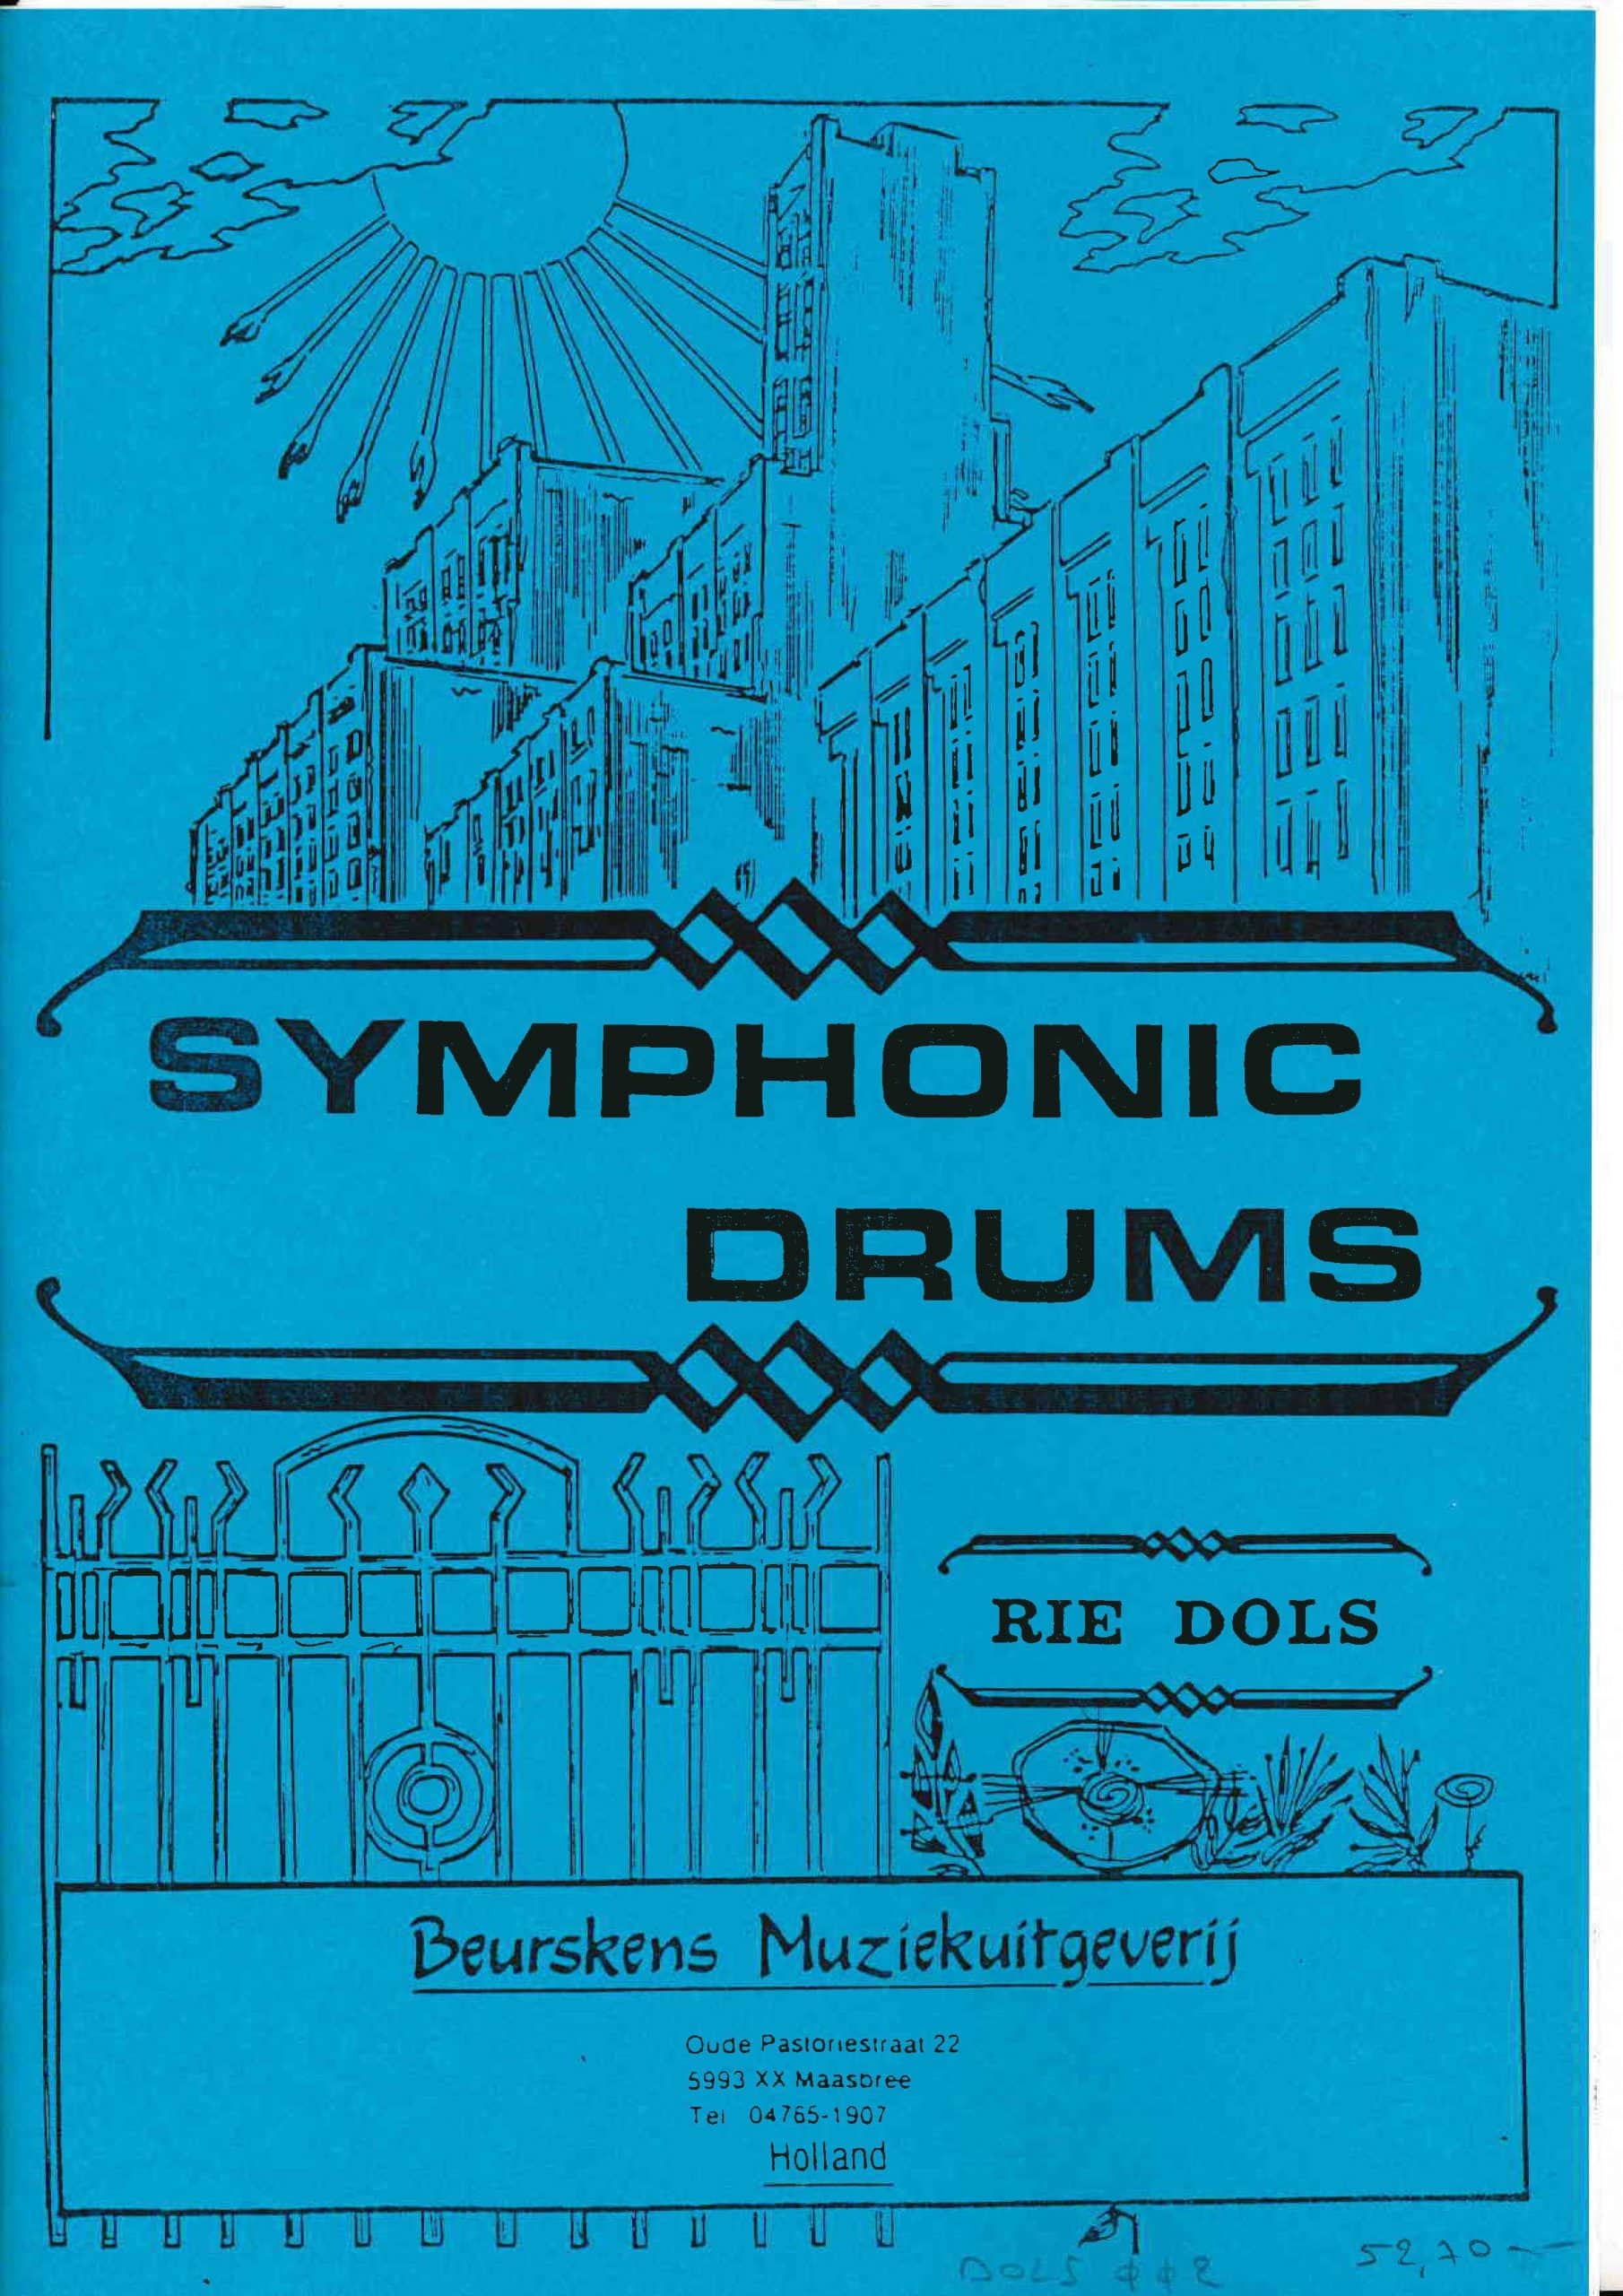 Symphonic Drums by Rie Dols